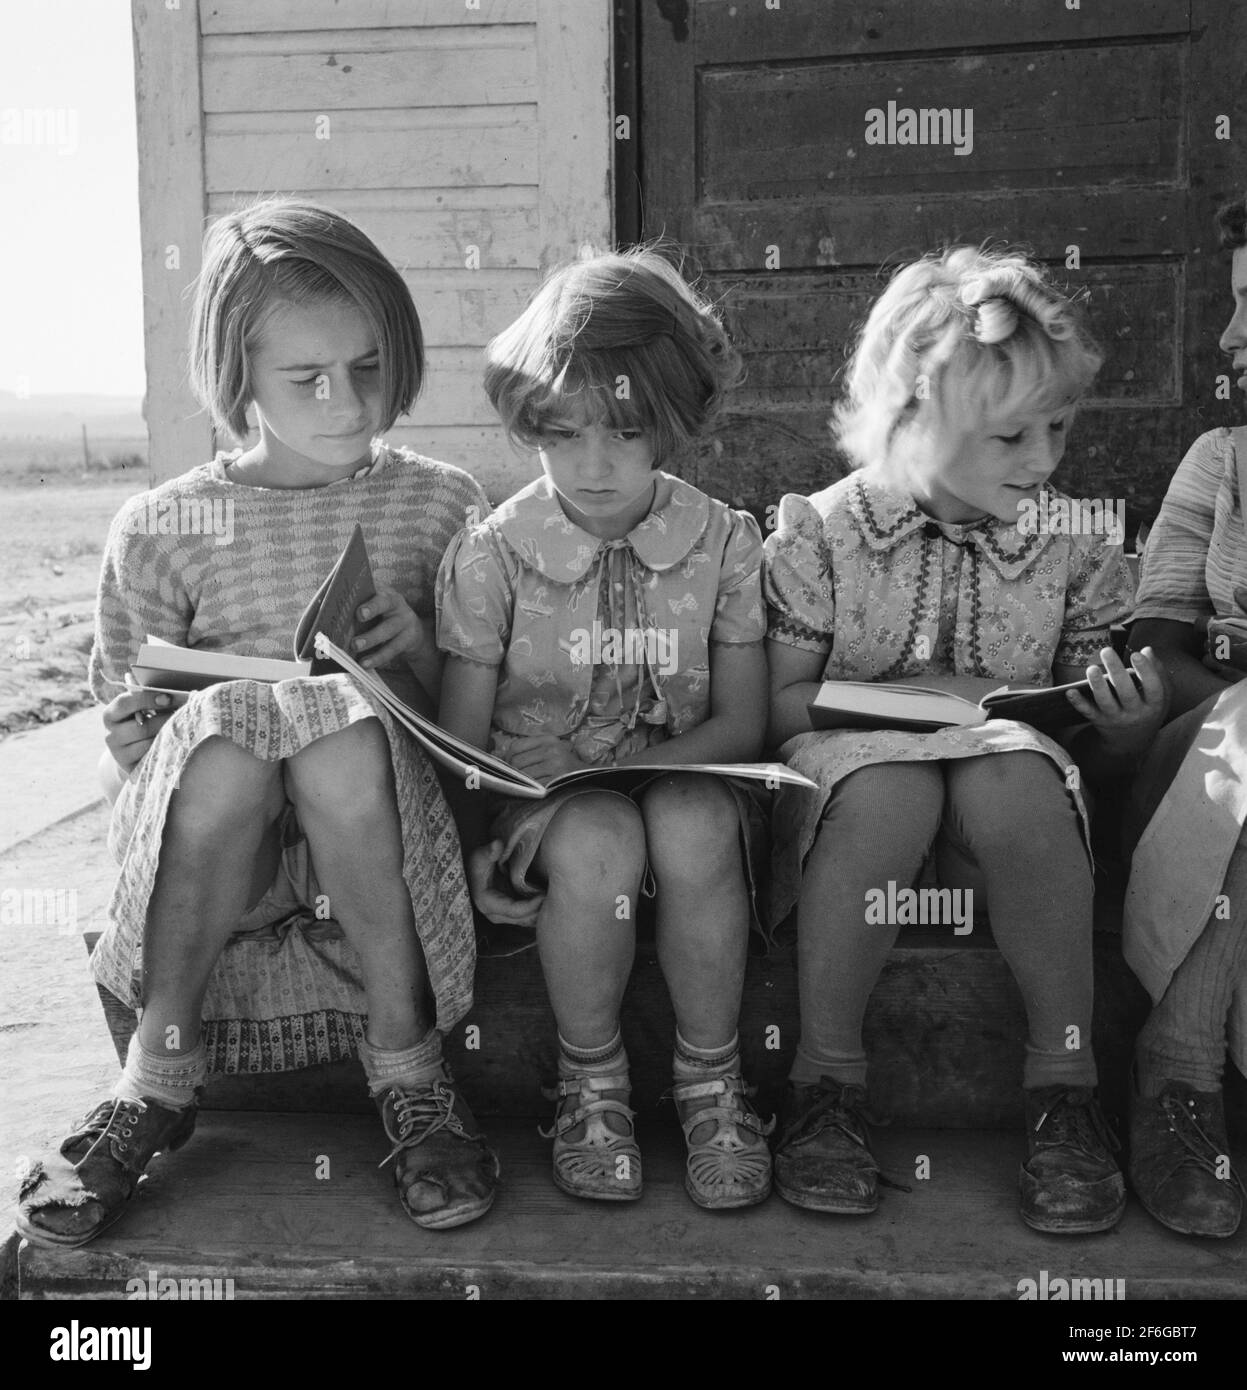 Mädchen der Lincoln Bench School studieren ihre Lesestunde. In Der Nähe Von Ontario, Malheur County, Oregon. 1939. Foto von Dorothea lange. Stockfoto